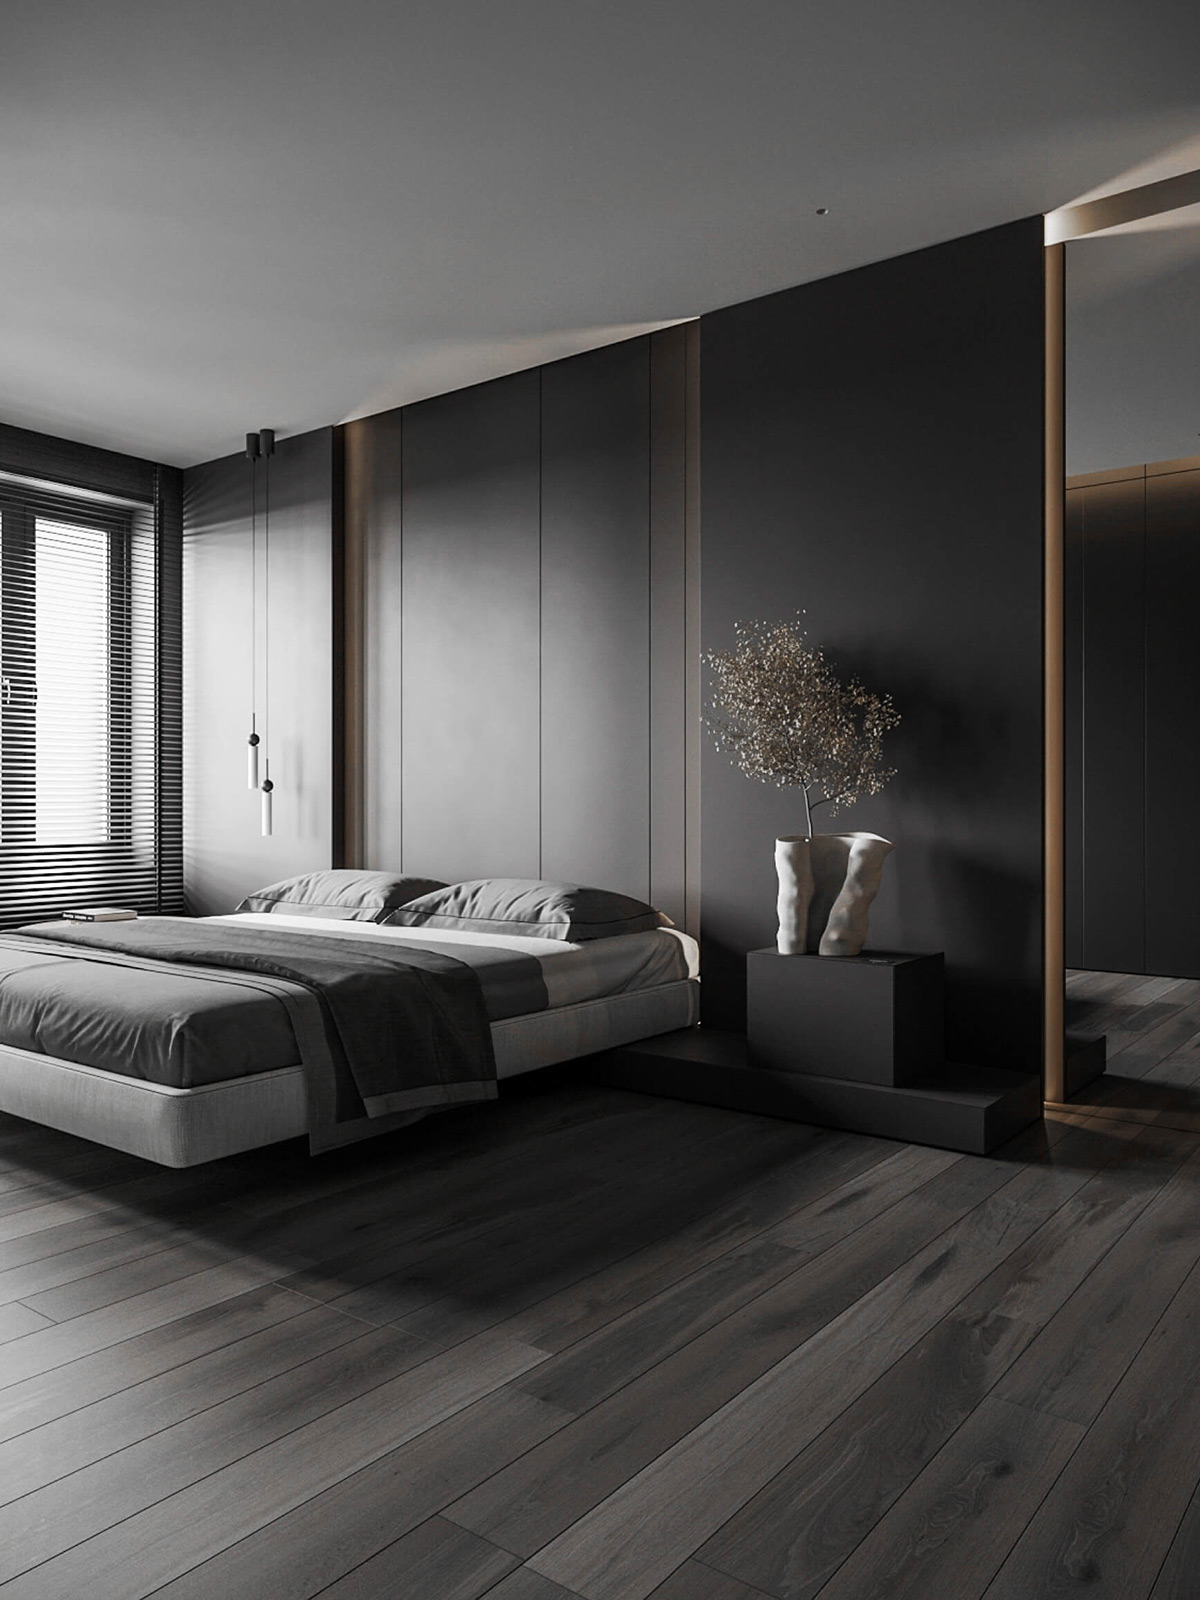 sophisticated gray scale monochromatic interior design 1